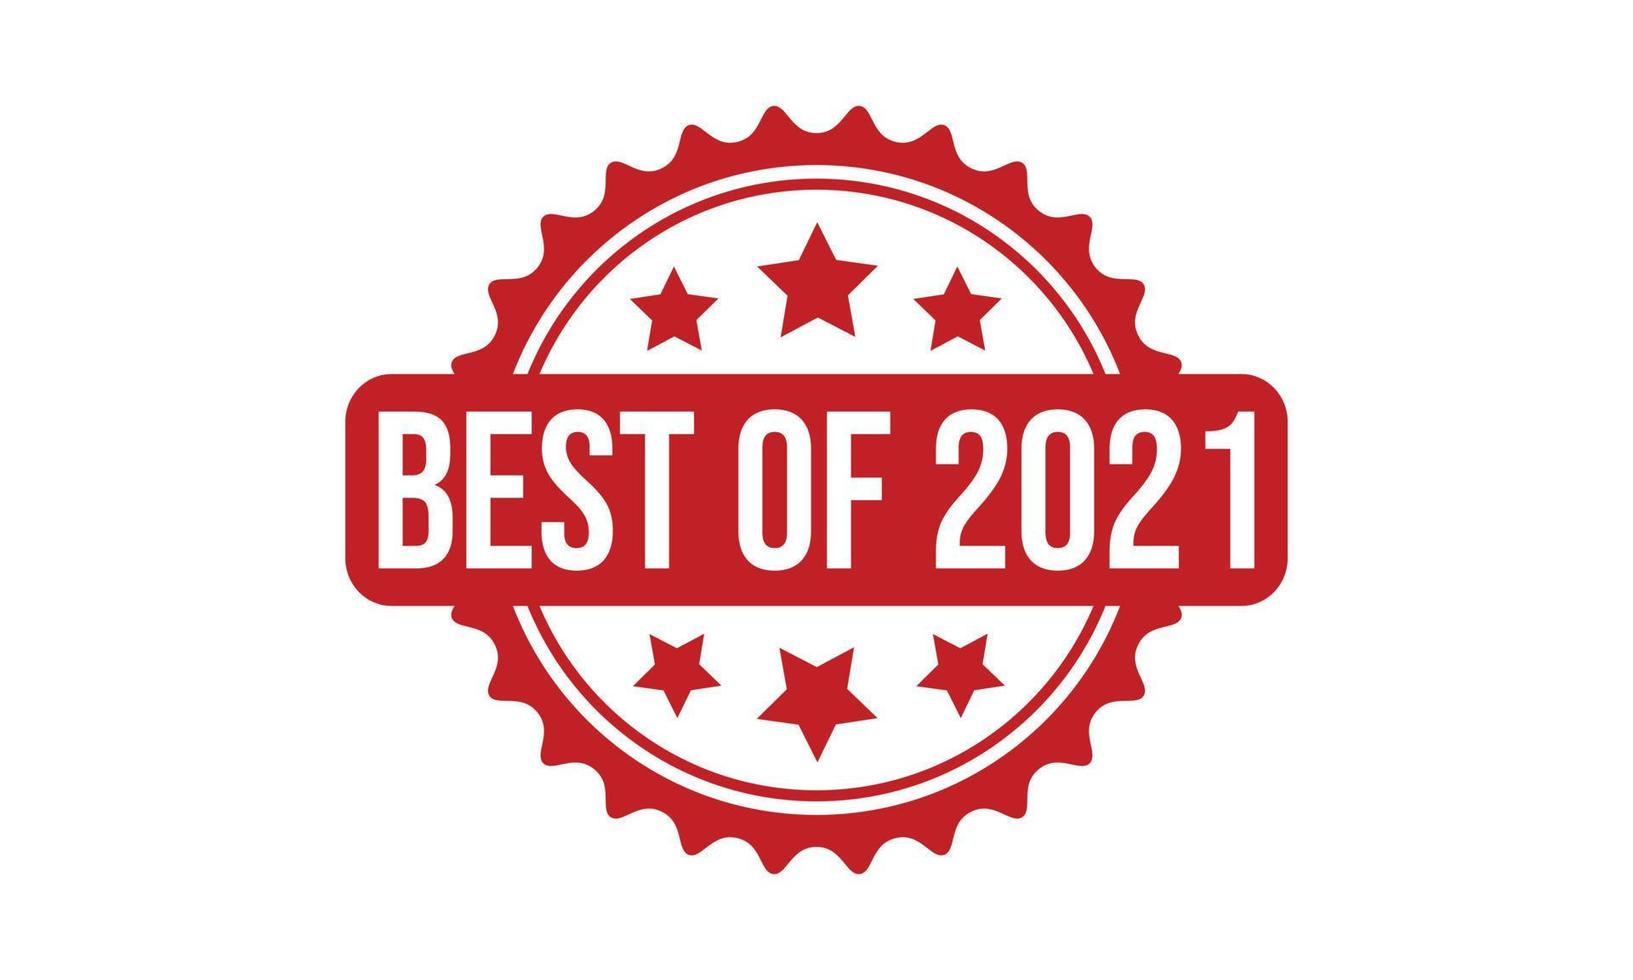 Best of 2021 Rubber Stamp. Best of 2021 Grunge Stamp Seal Vector Illustration